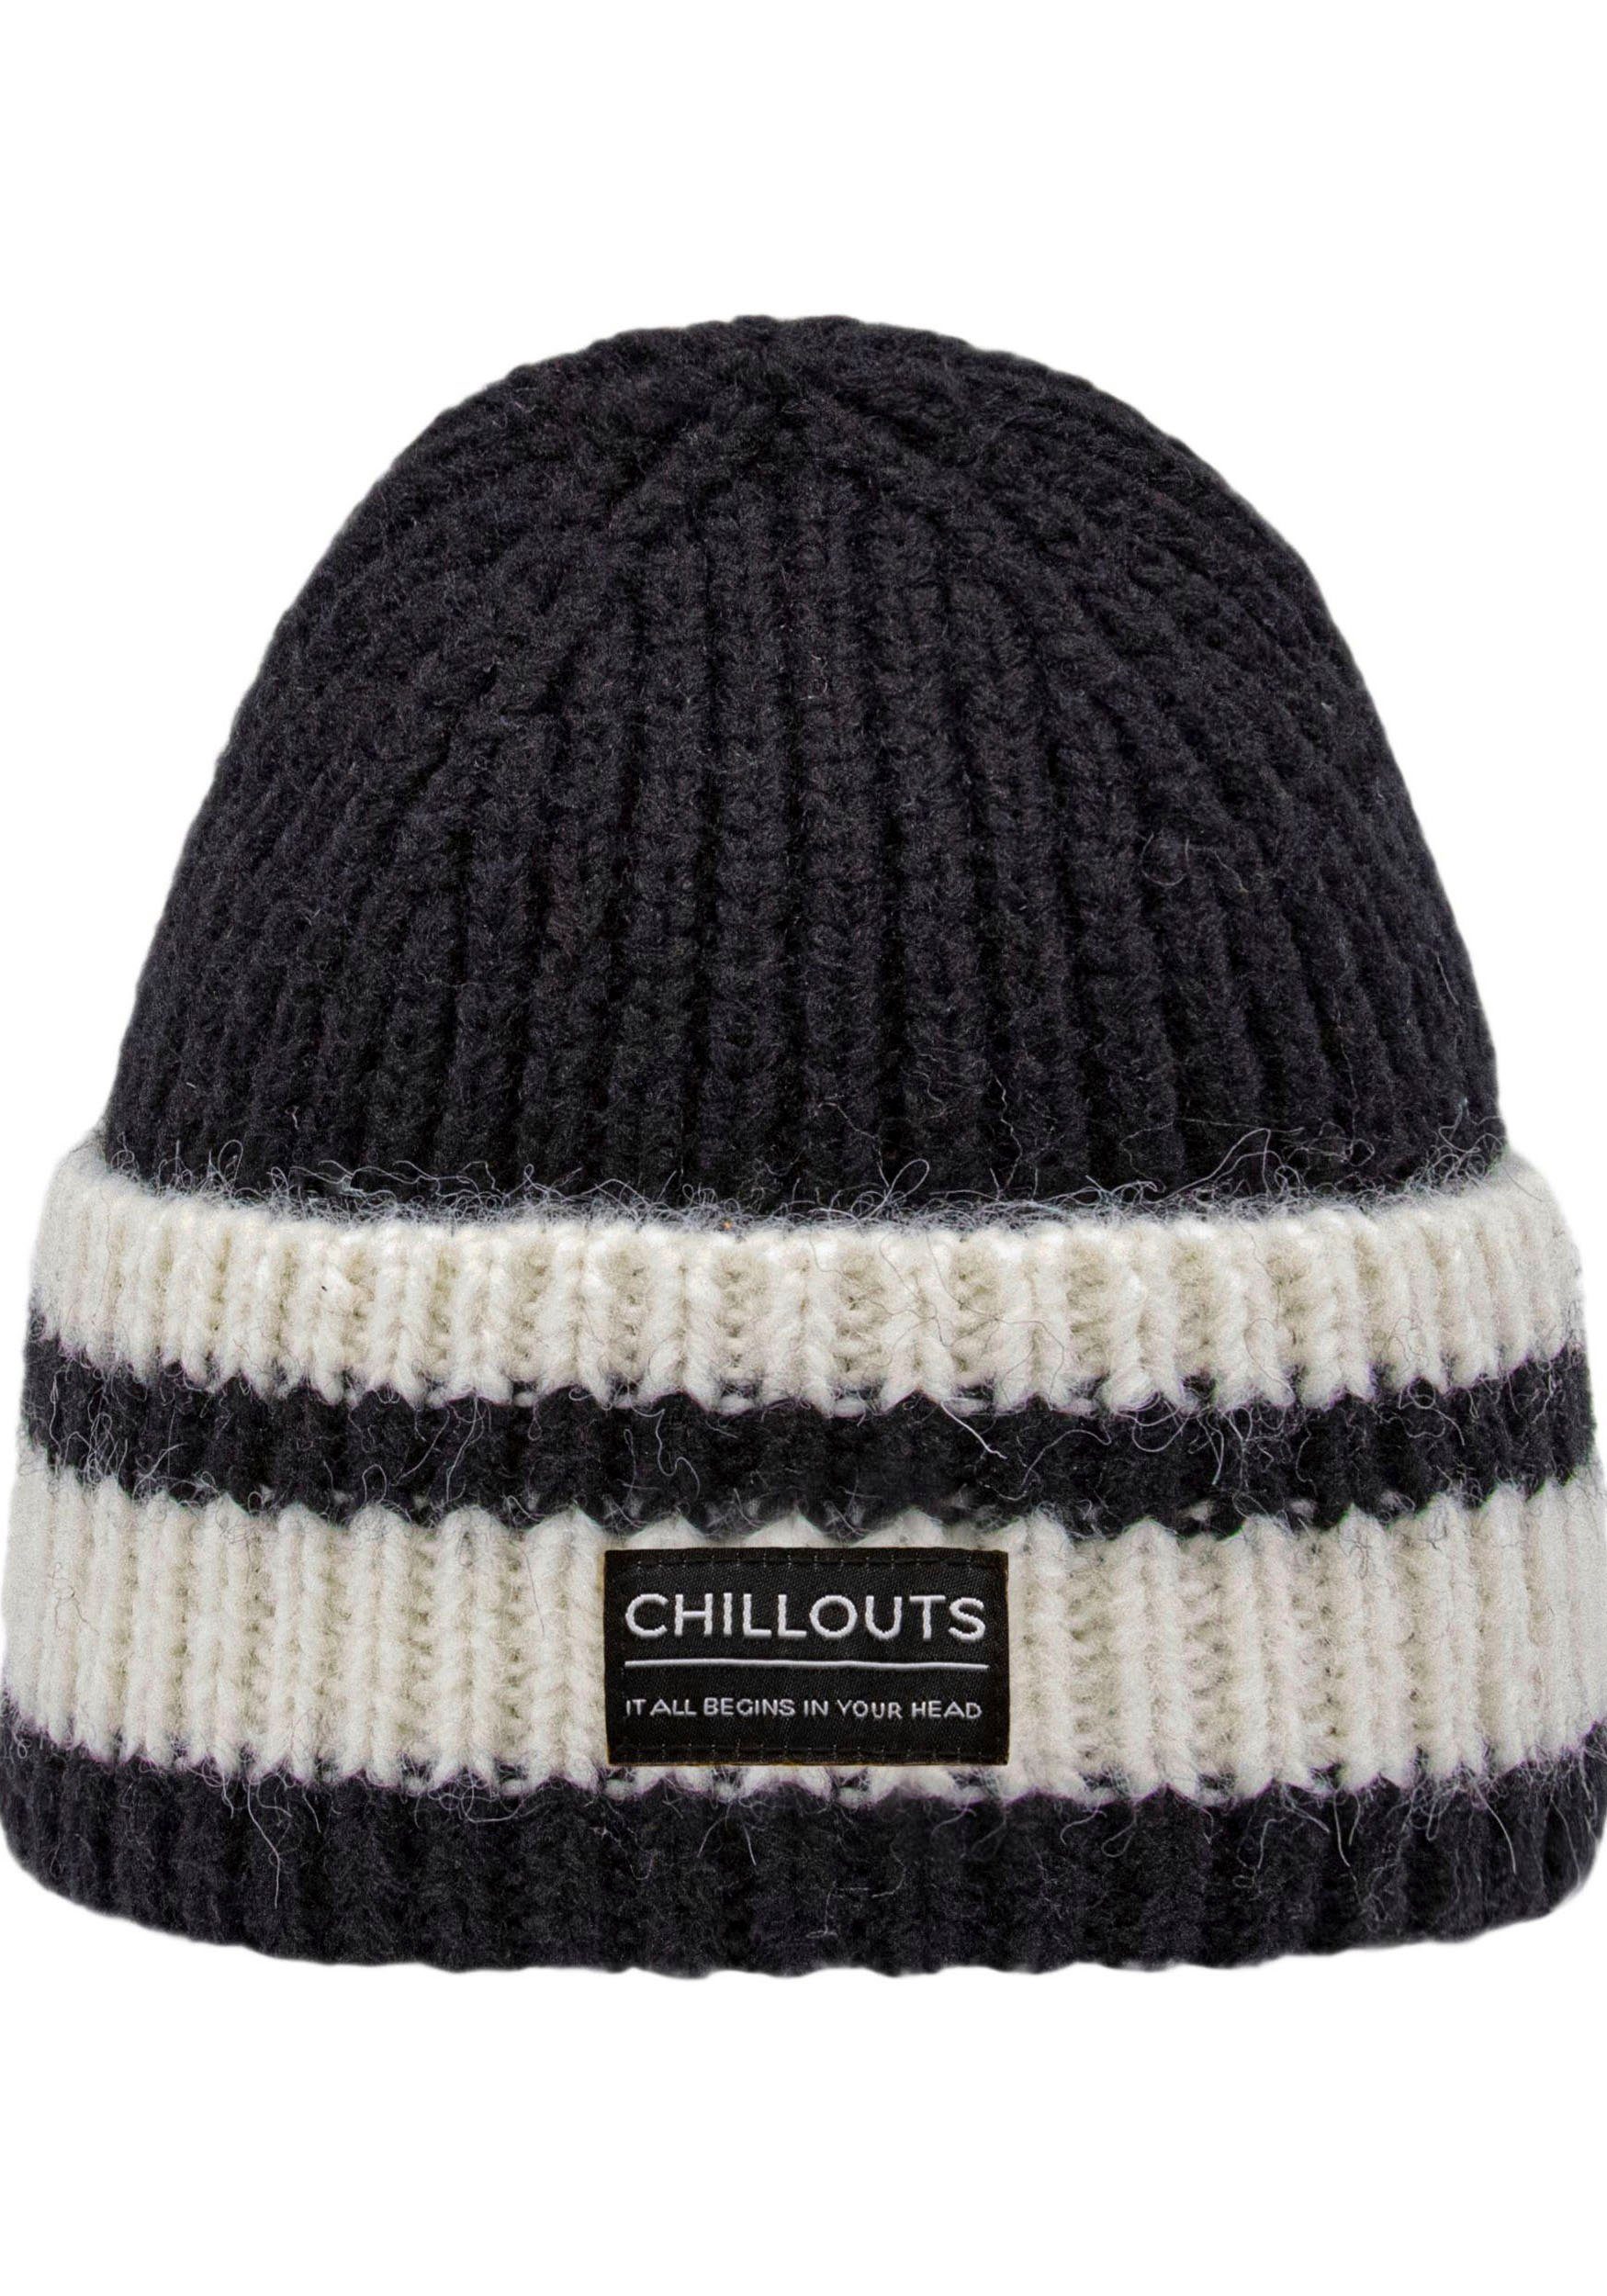 chillouts Strickmütze Cooper Hat mit Kontrast-Streifen black-white